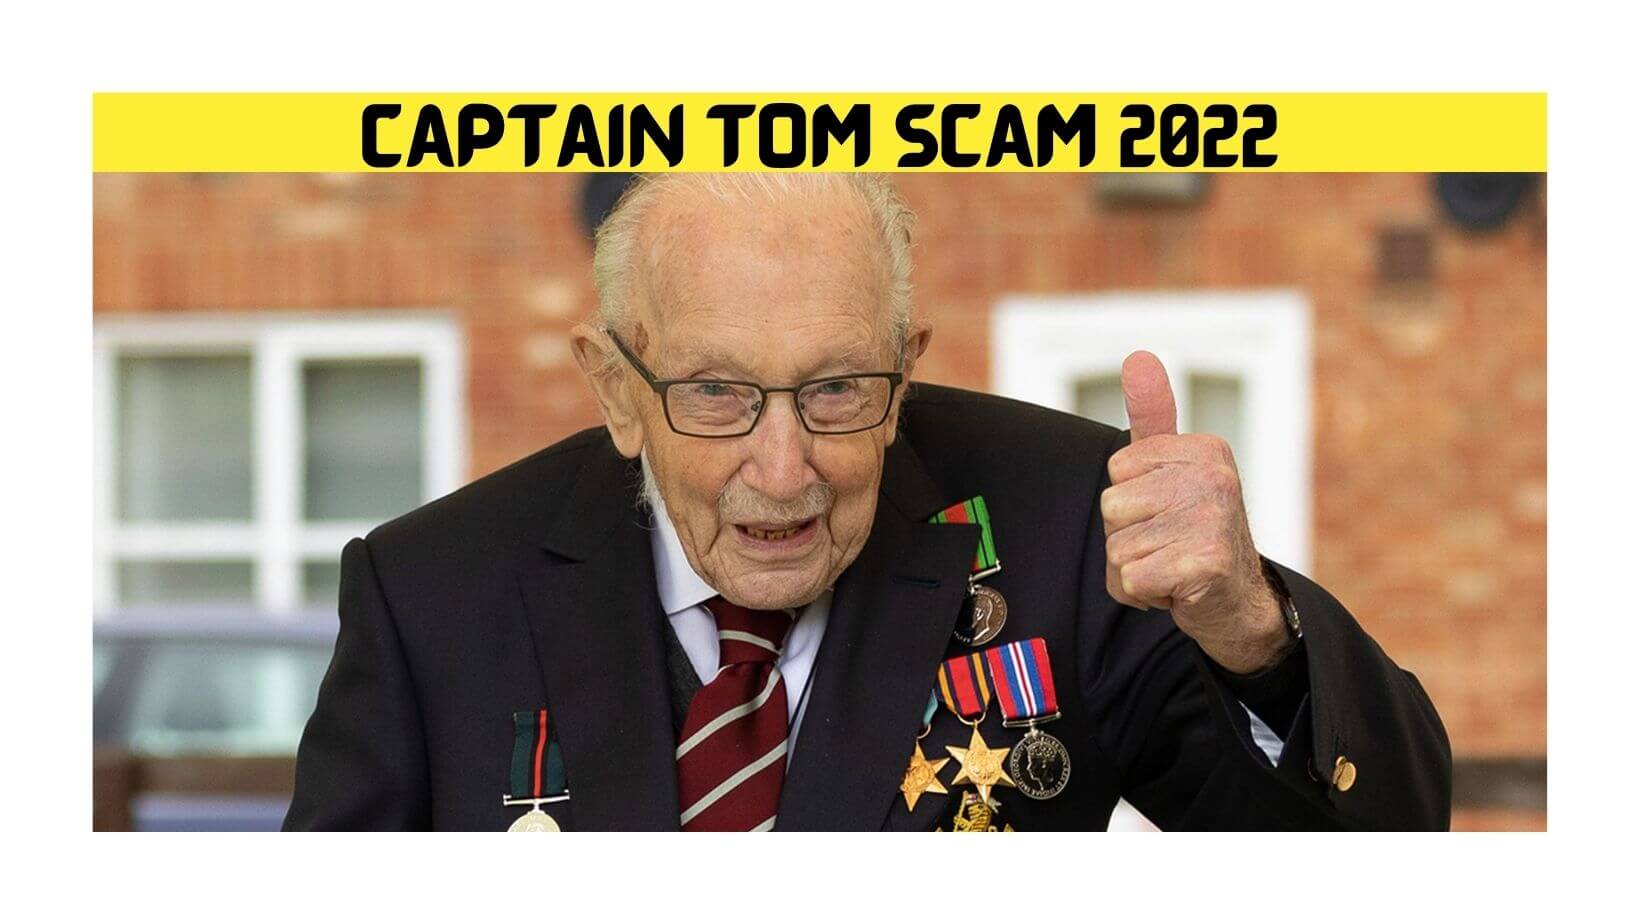 Captain Tom Scam